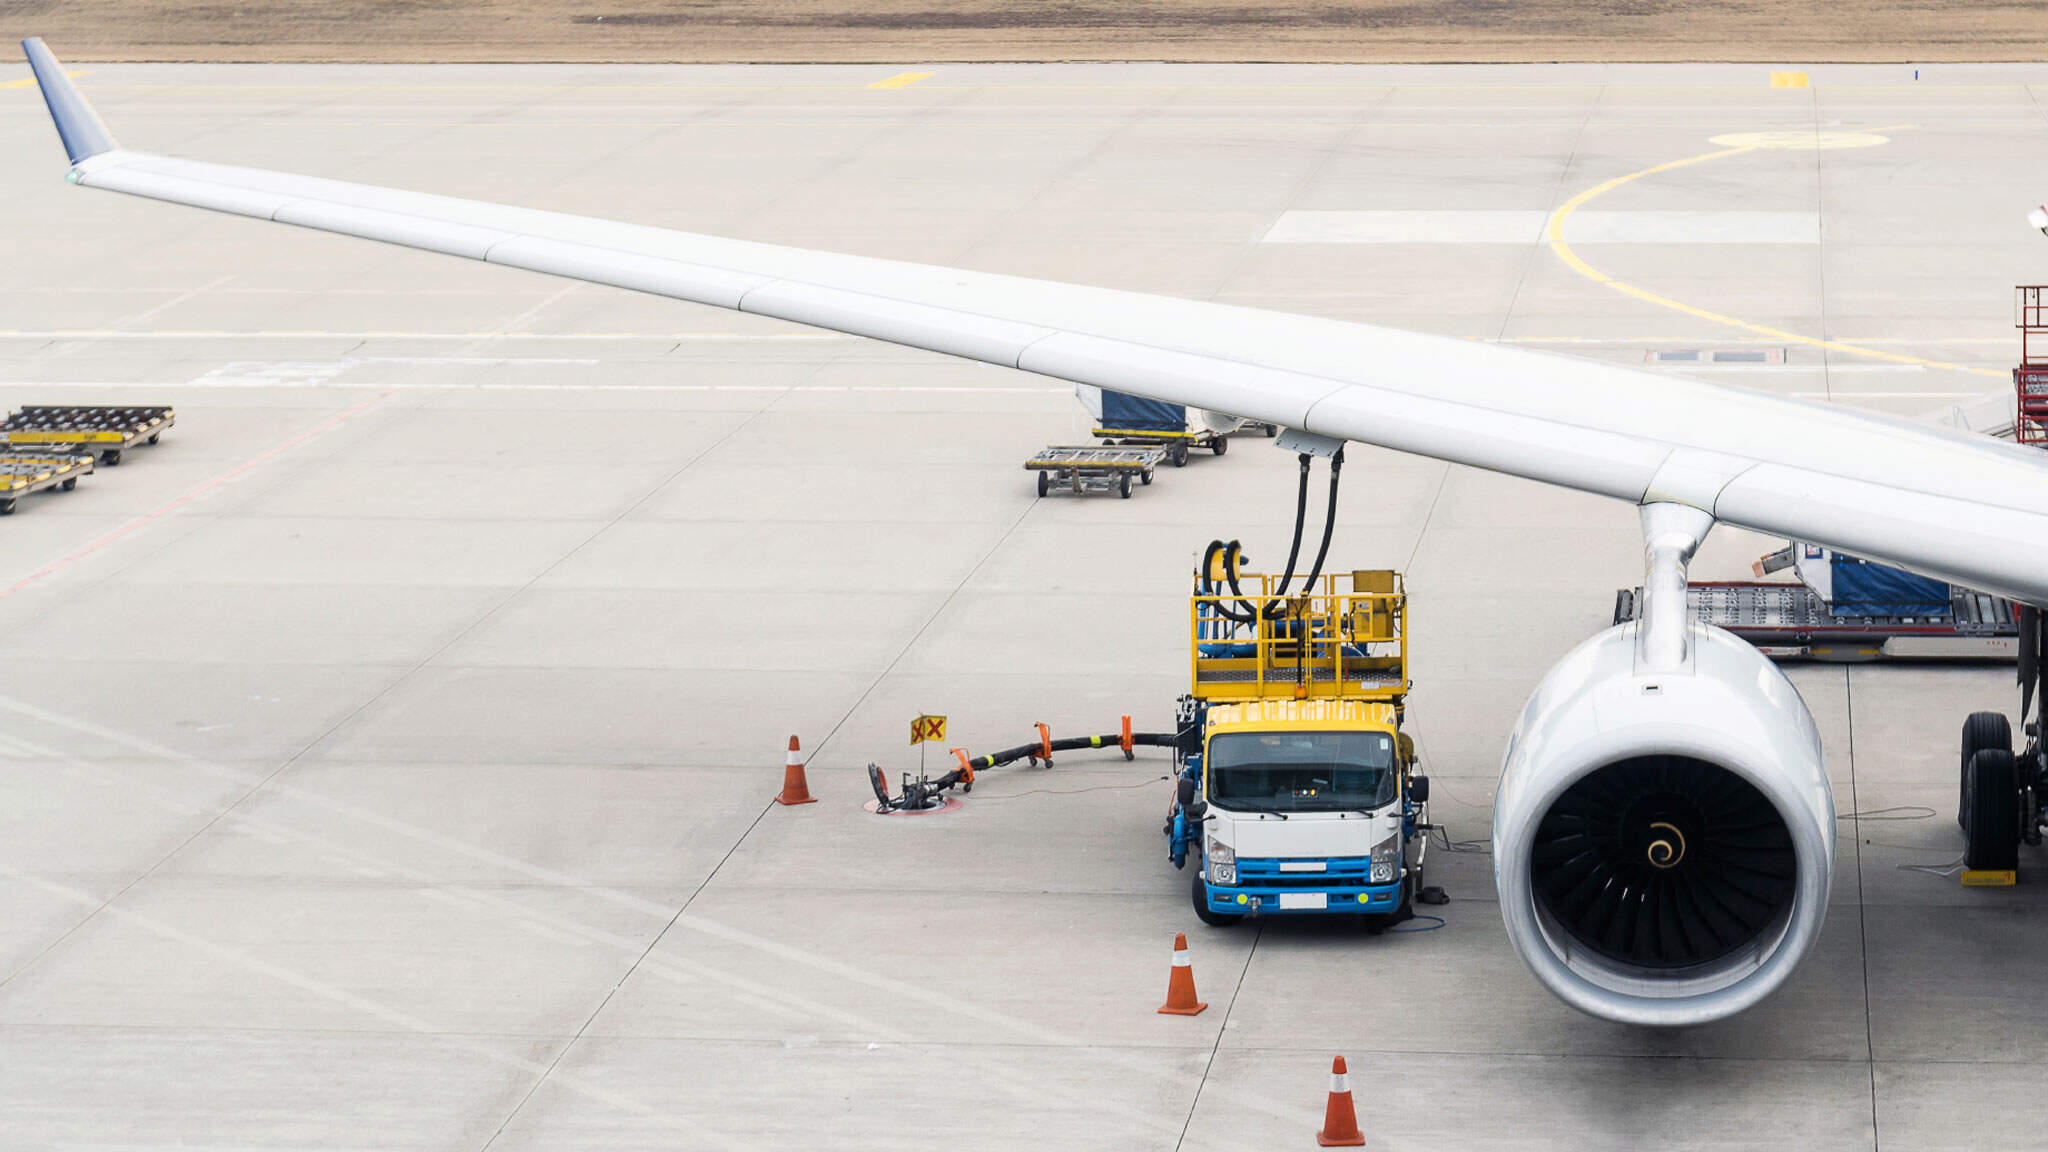 DACHSER vil benytte Book & Claim-tilnærmingen når de lanserer sine første prosjekter for bærekraftig flydrivstoff sammen med kunder i 2023.